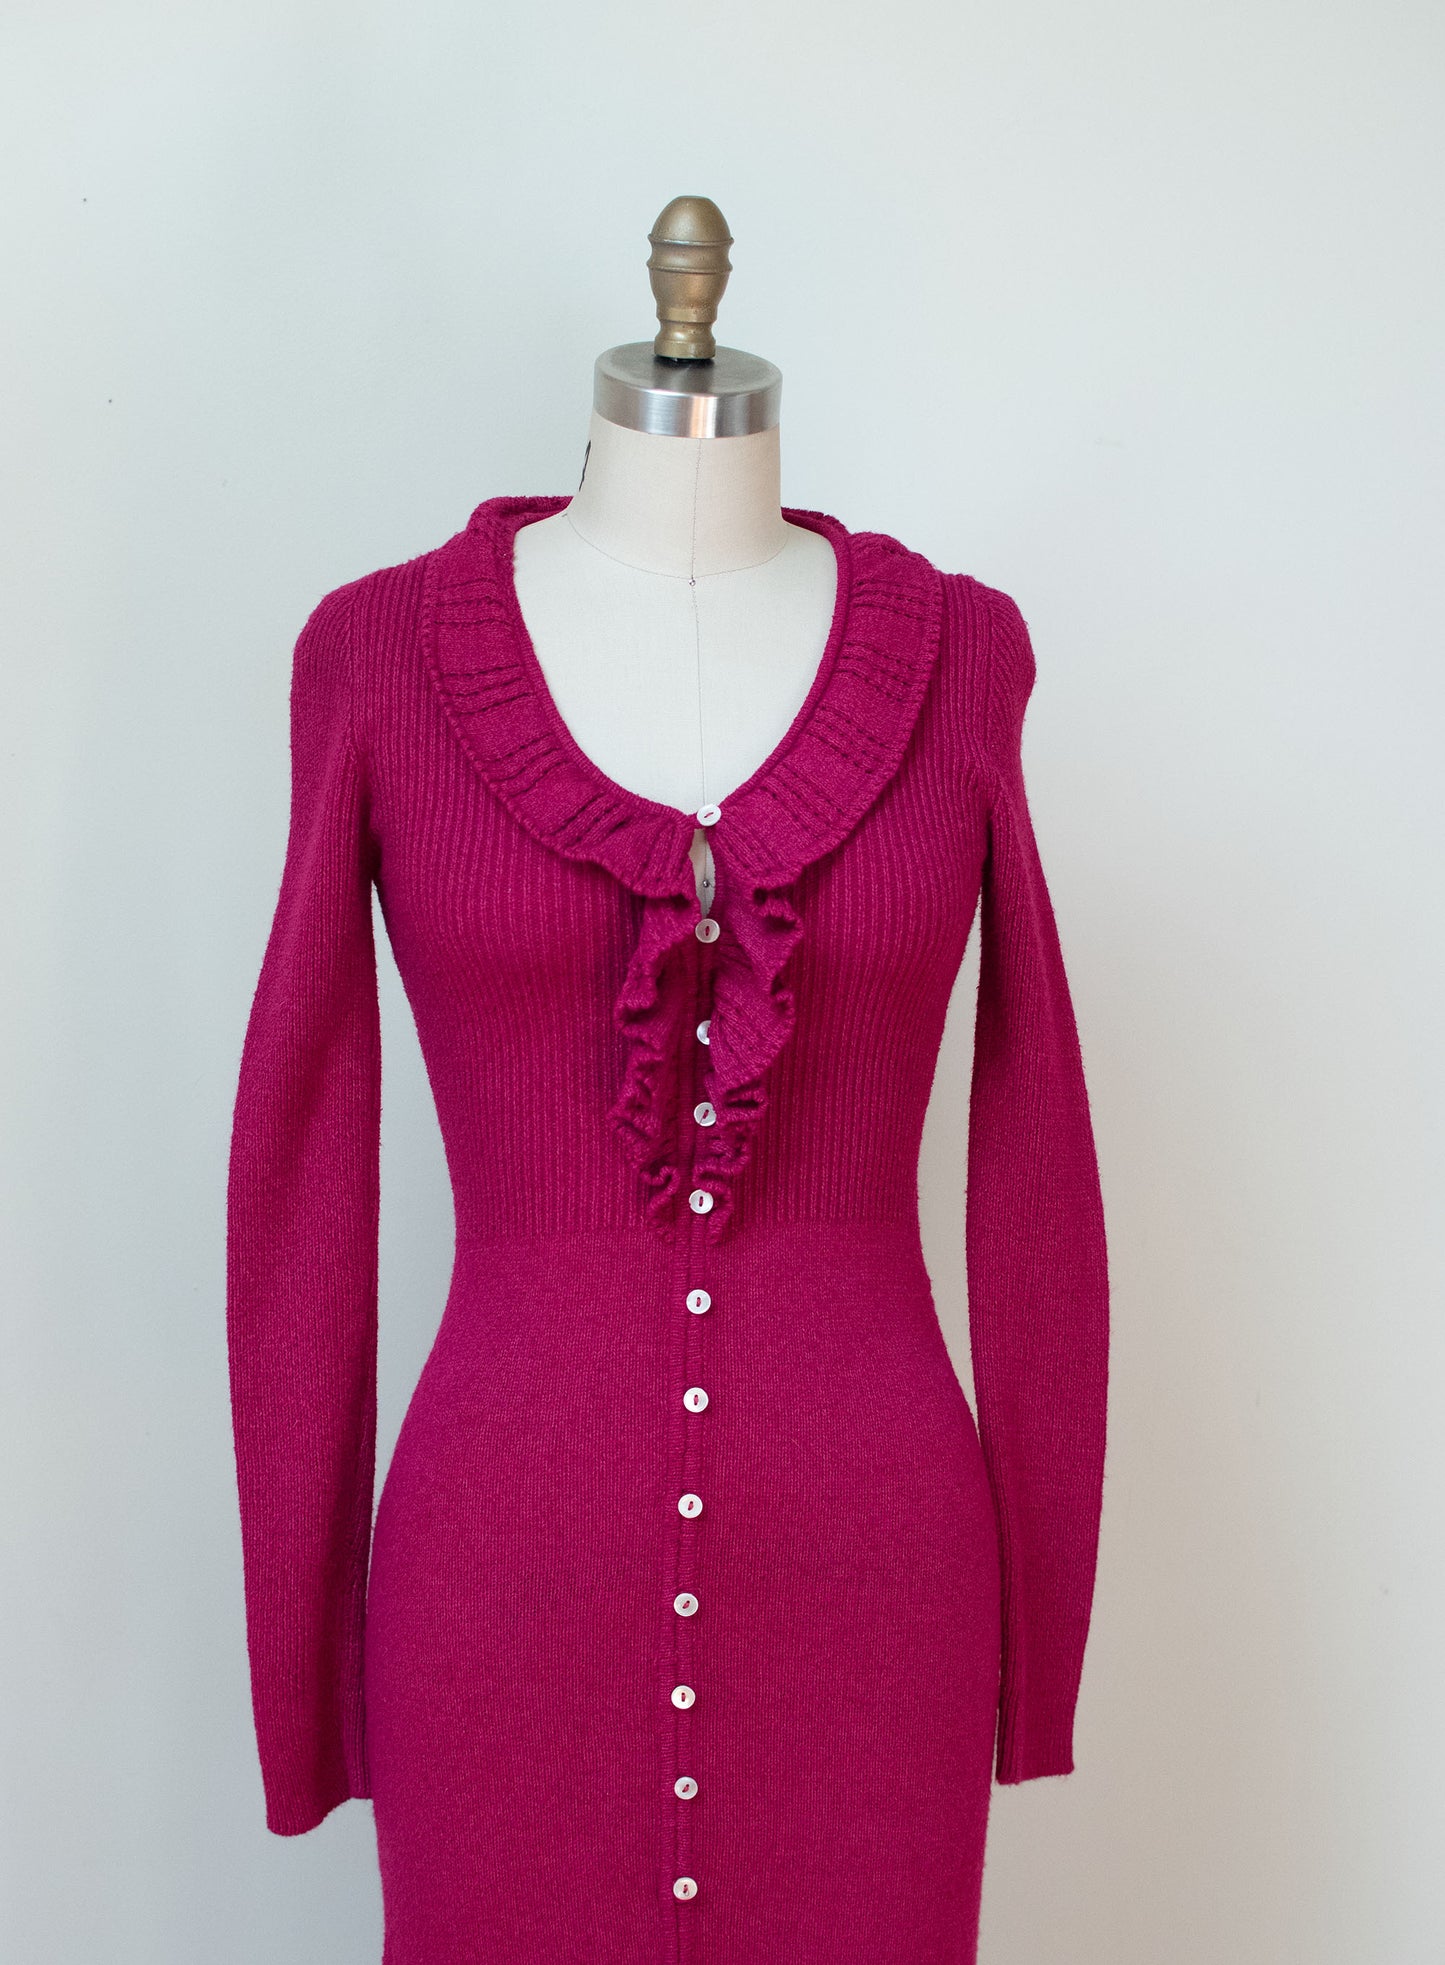 1970s Raspberry Knit Dress